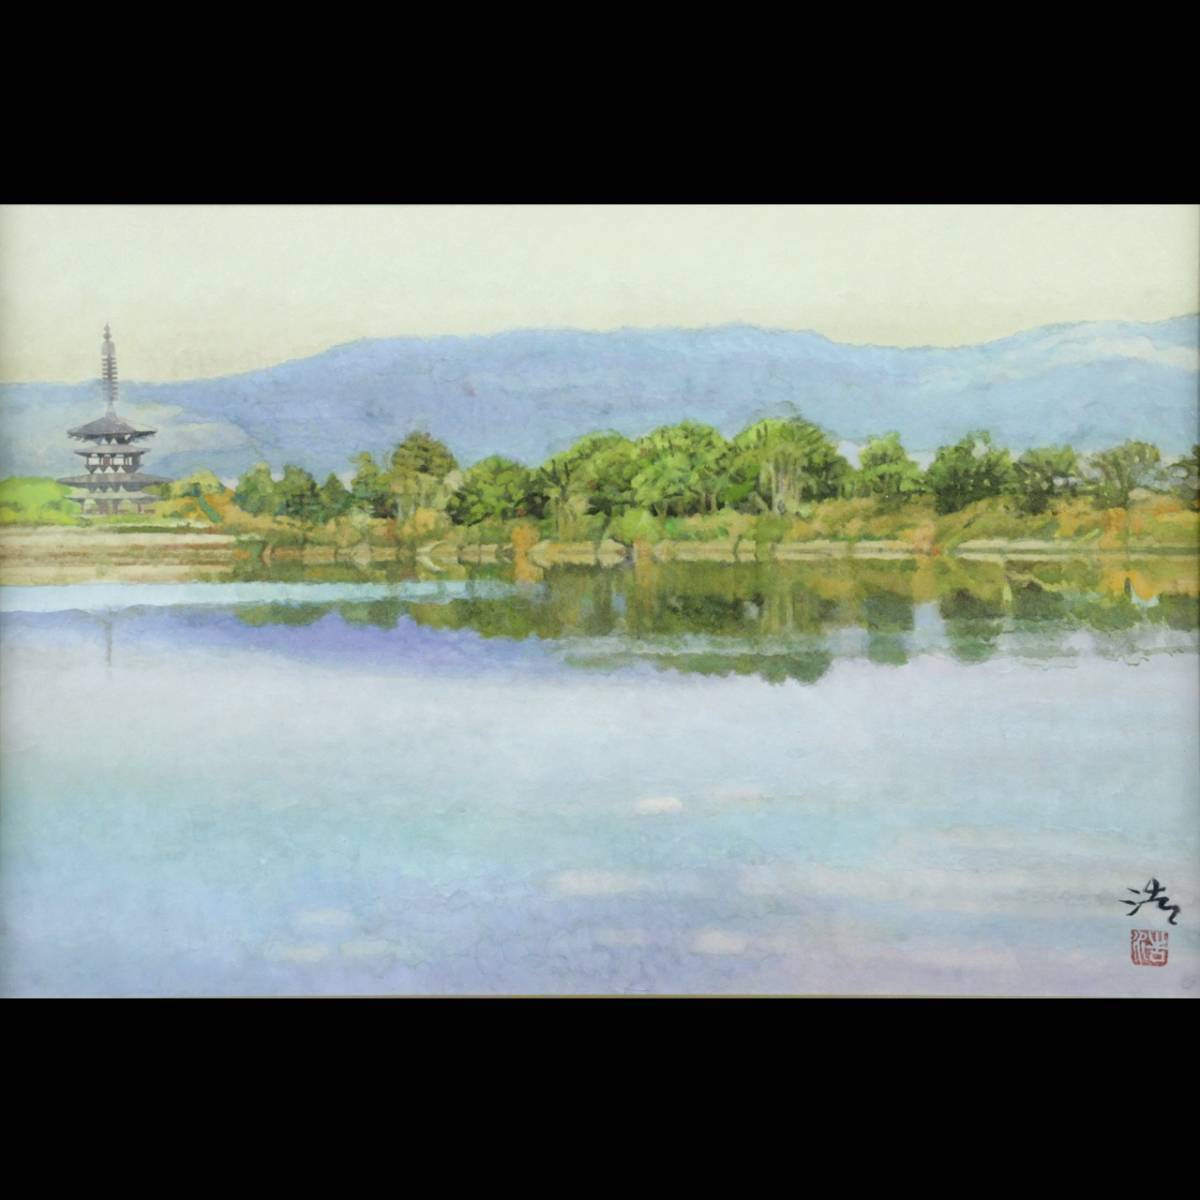 ｡◆ ◆ Garantiert echtes Hiroshi Tadokoro Fernansicht des Yakushiji-Tempels Handgemaltes japanisches Gemälde Nr. 6 mit Aufkleber und Tato-Box T[C76]U/24.1 Umdrehungen/SI/(140), Malerei, Japanische Malerei, Landschaft, Wind und Mond